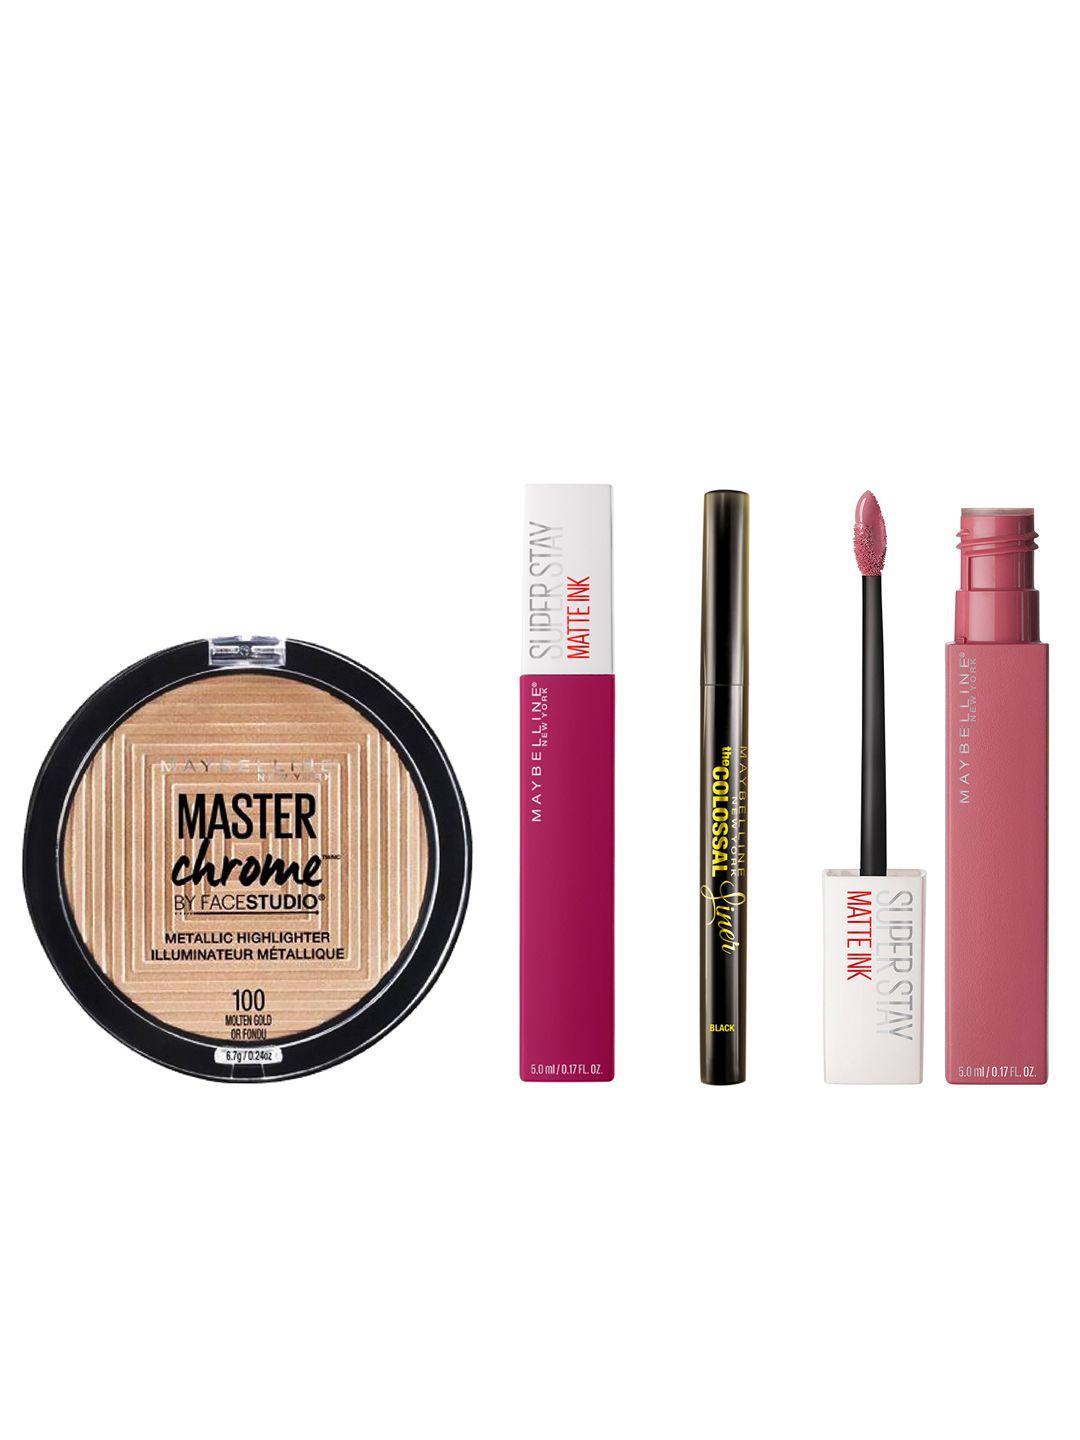 maybelline new york set of liquid lipsticks - master chrome highlighter - colossal liner